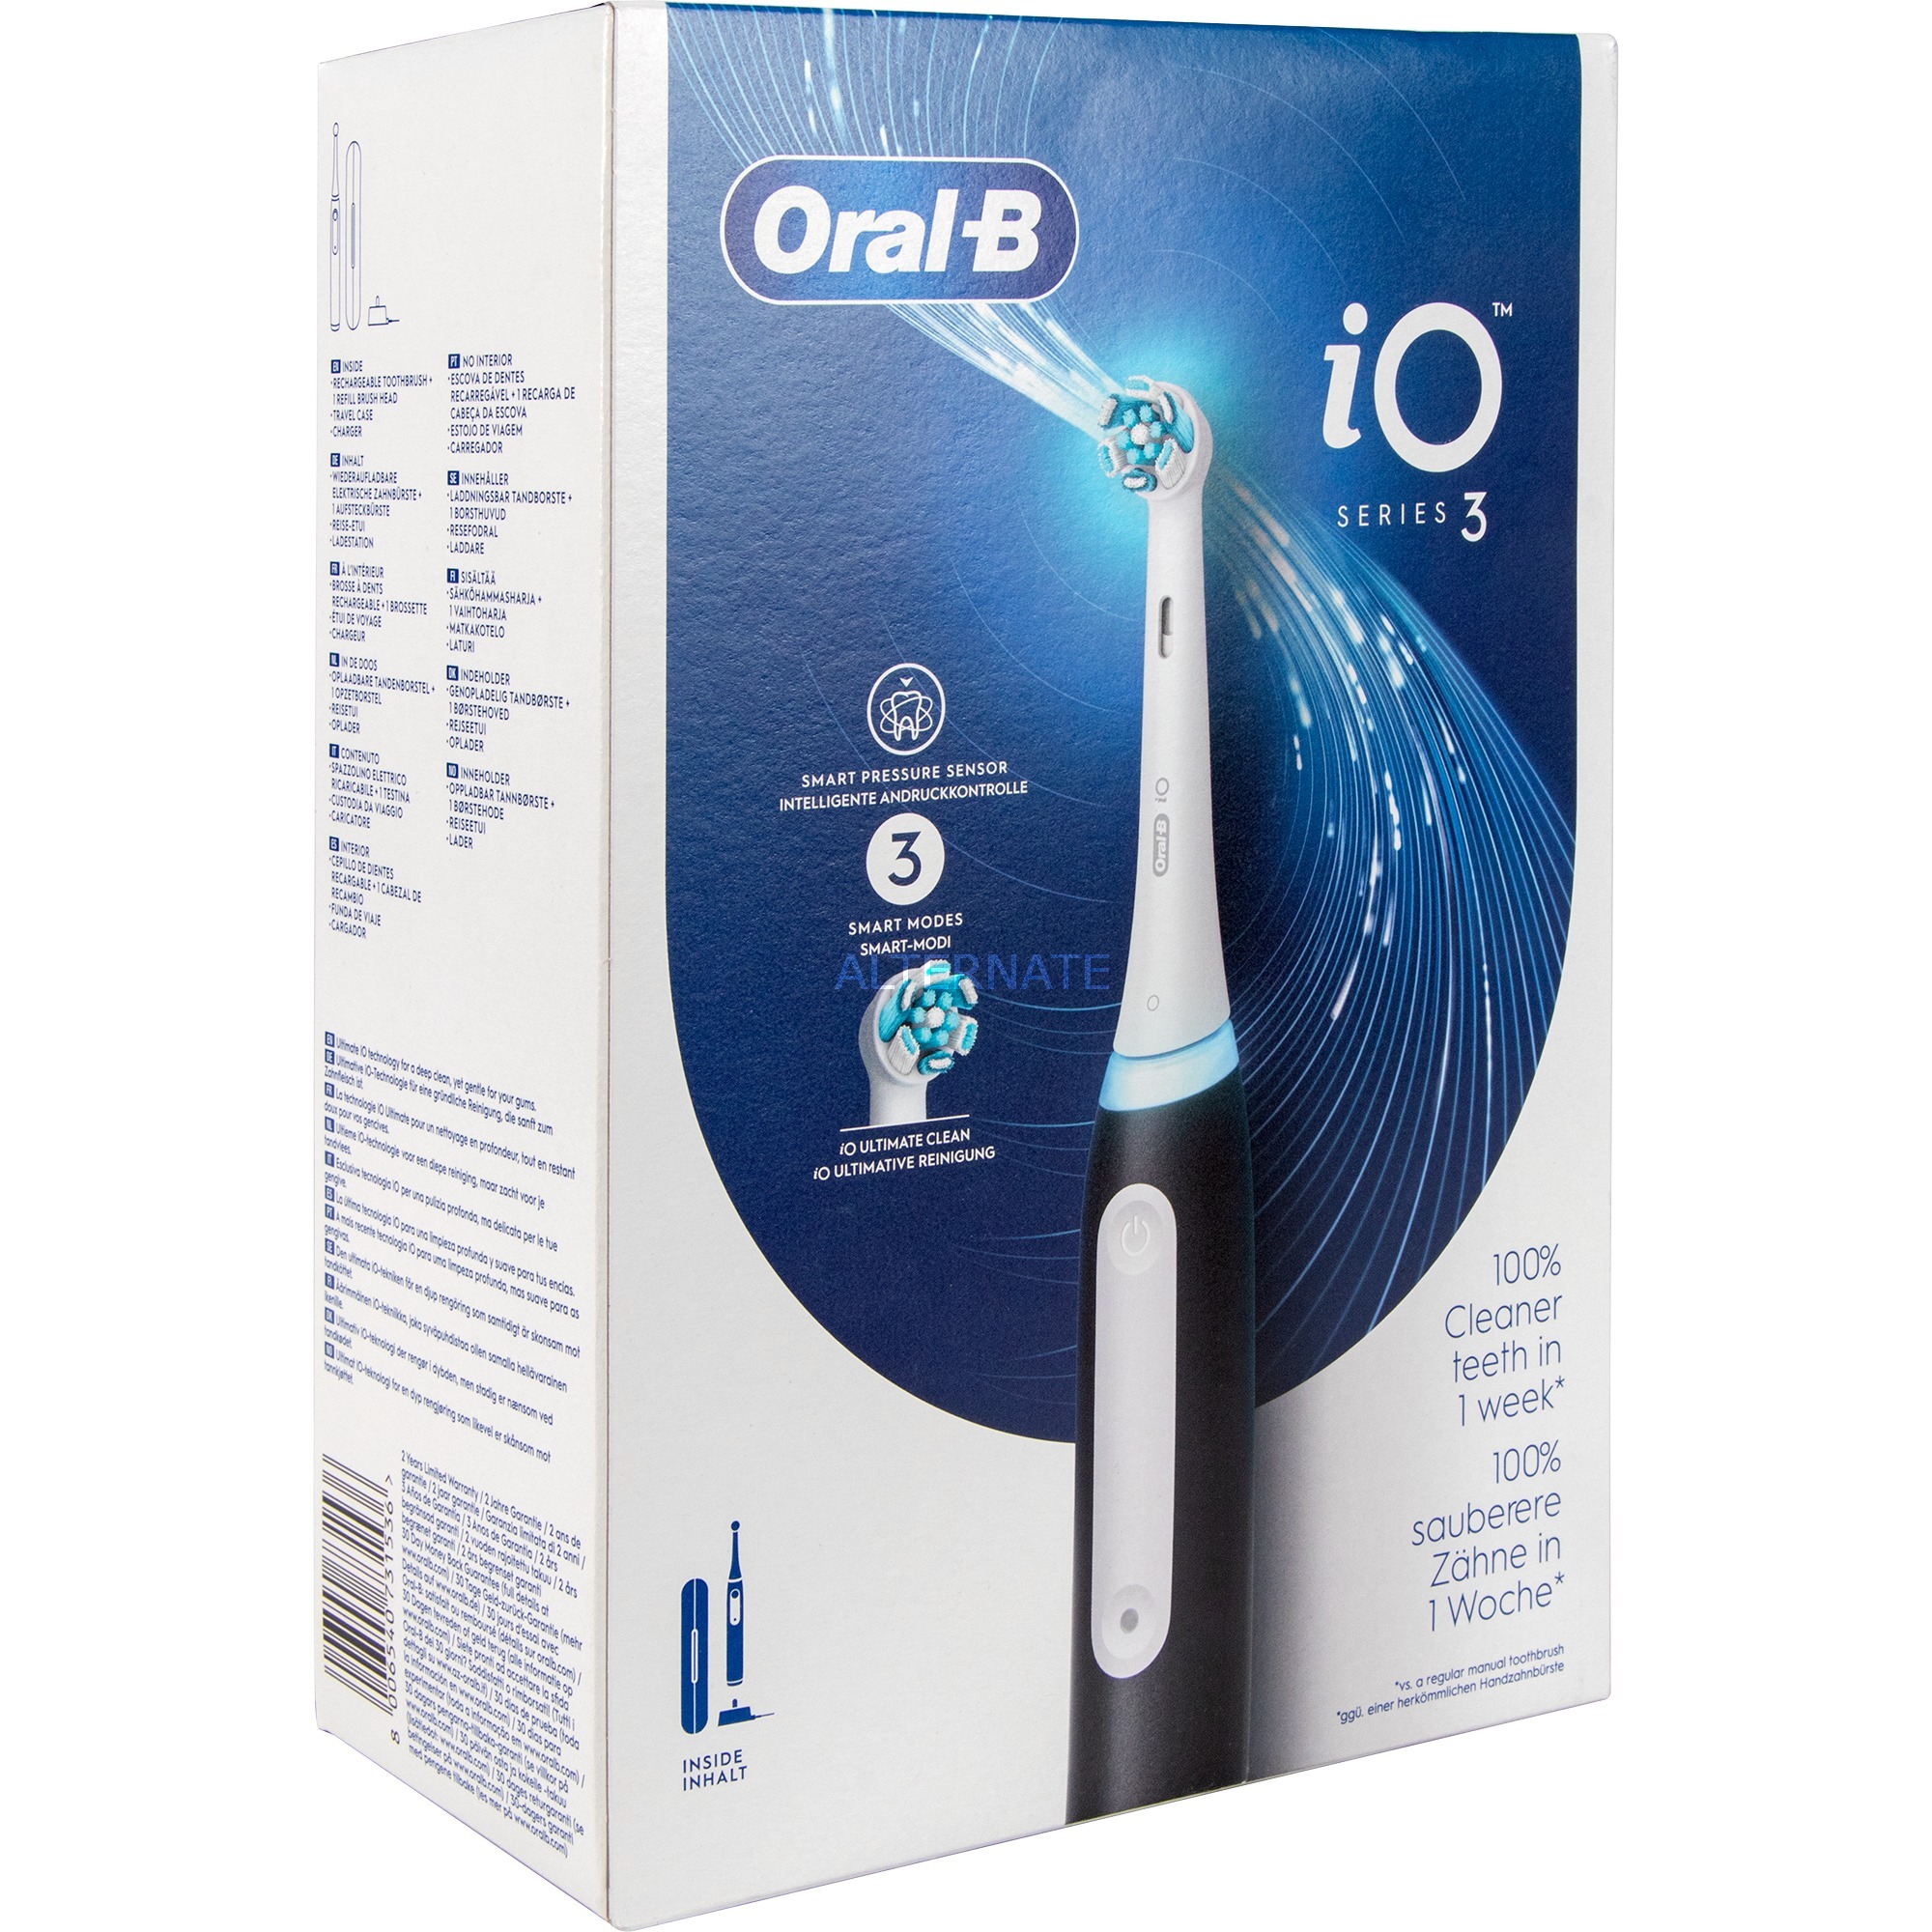 Oral-B iO Series 3 Elektrische Zahnbürste/Electric Toothbrush, 3 Putzmodi für Zahnpflege, Magnet-Technologie, Reiseetui, Designed by Braun, matt black